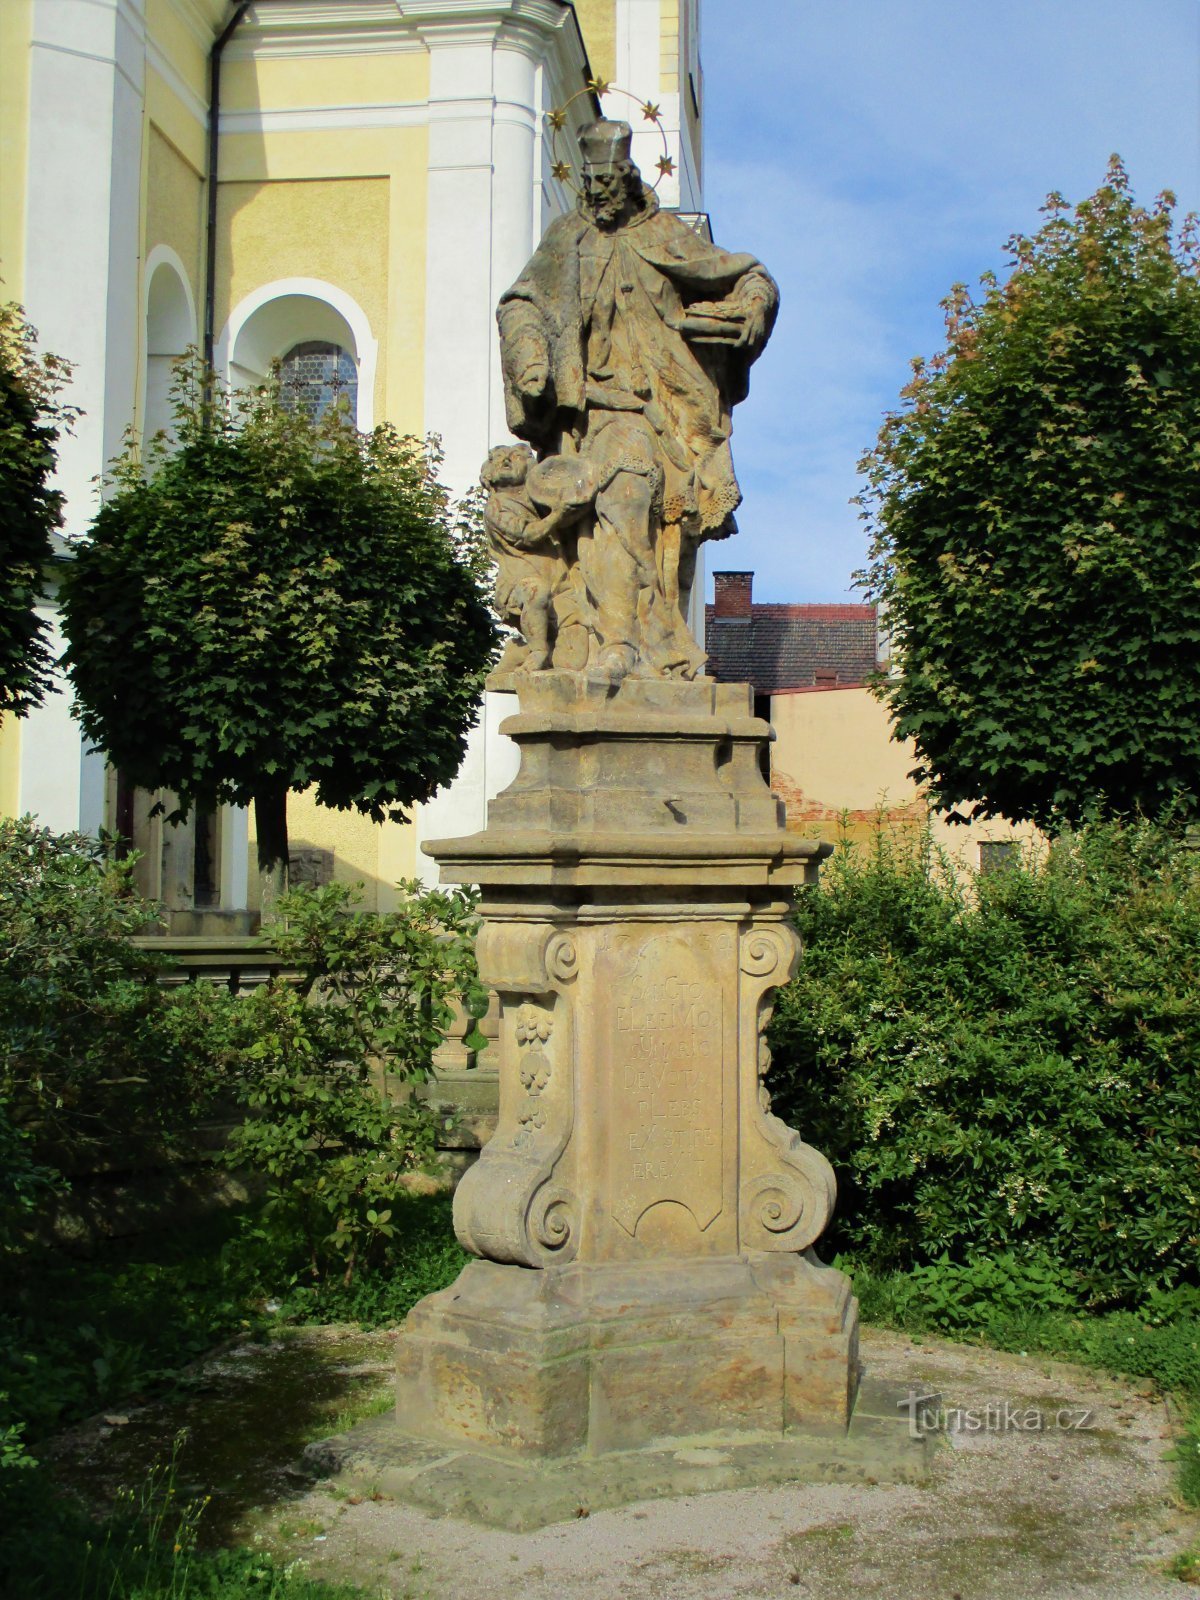 Statua di S. Giovanni Nepomuceno in chiesa (Hořice, 26.7.2020 luglio XNUMX)